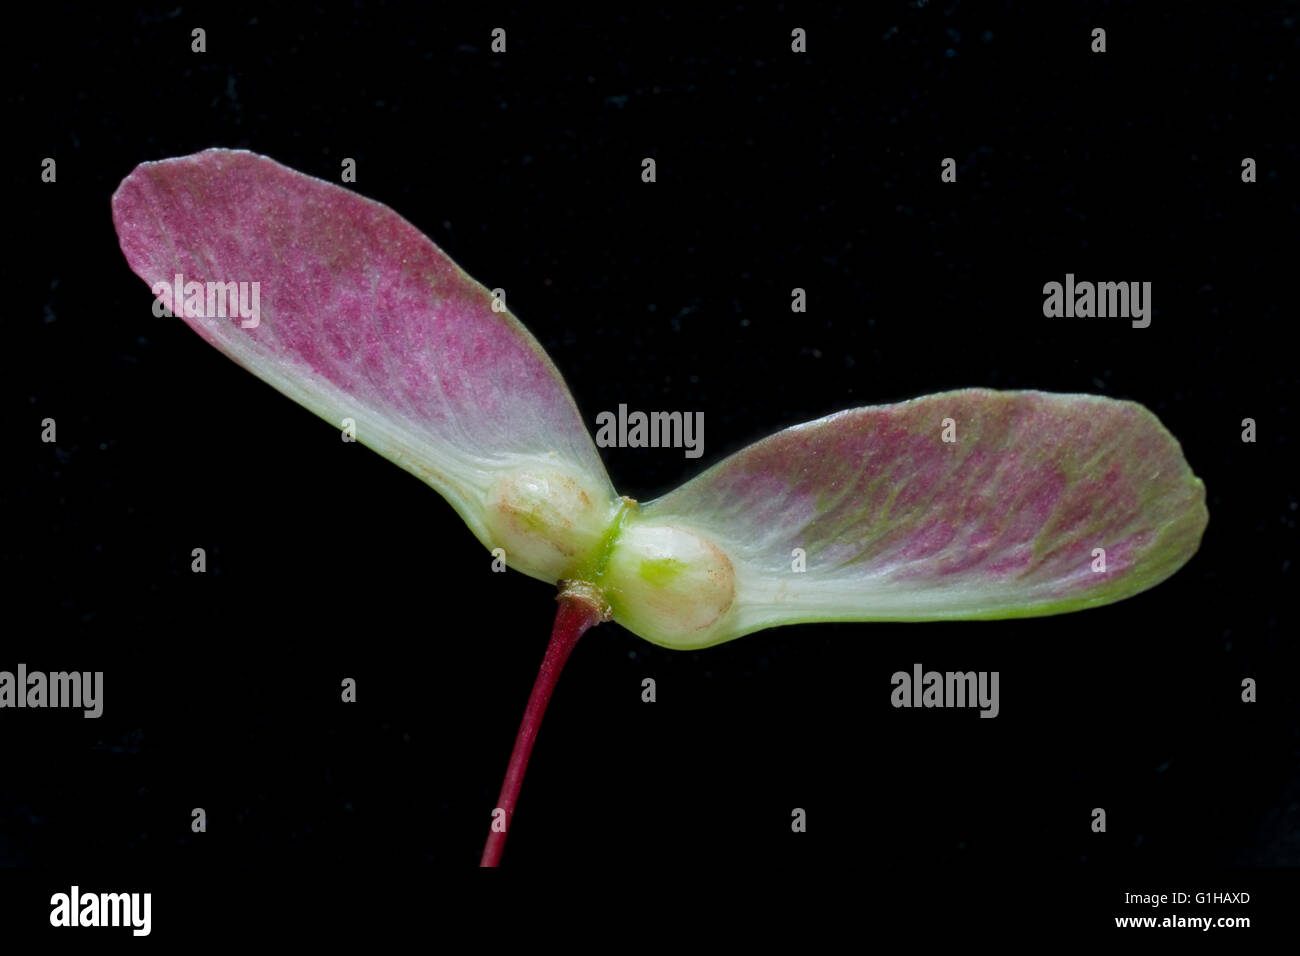 Las semillas de arce japonés están emparejados samaras un achene alado también conocido como spinning jenny Foto de stock